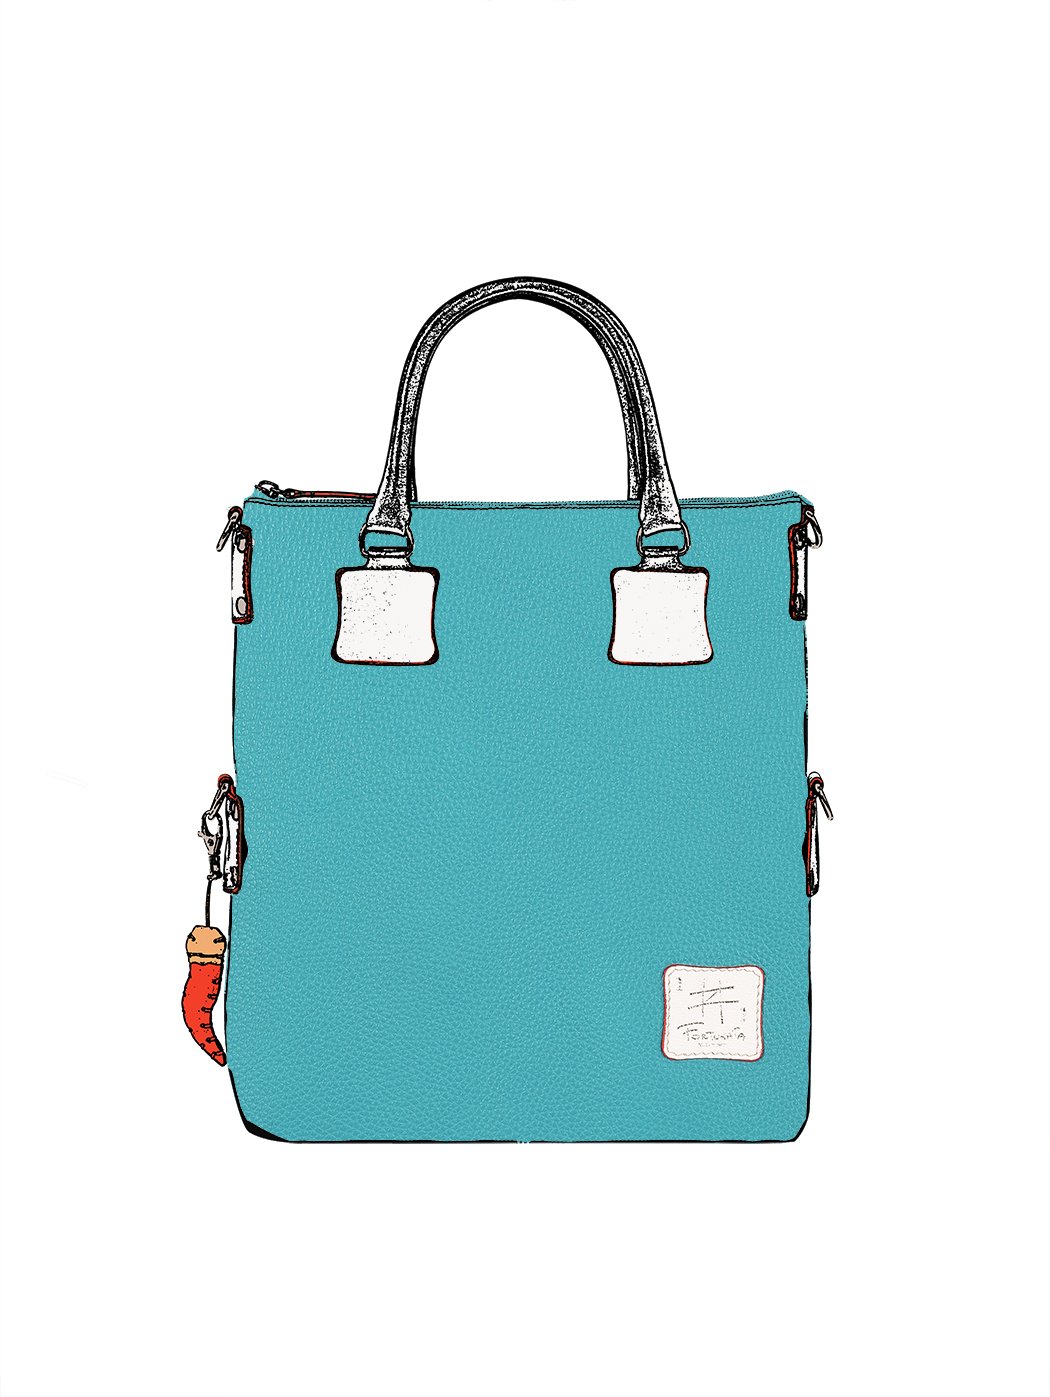 Дизайнерская сумка  из коллекции Fortunata голубого цвета